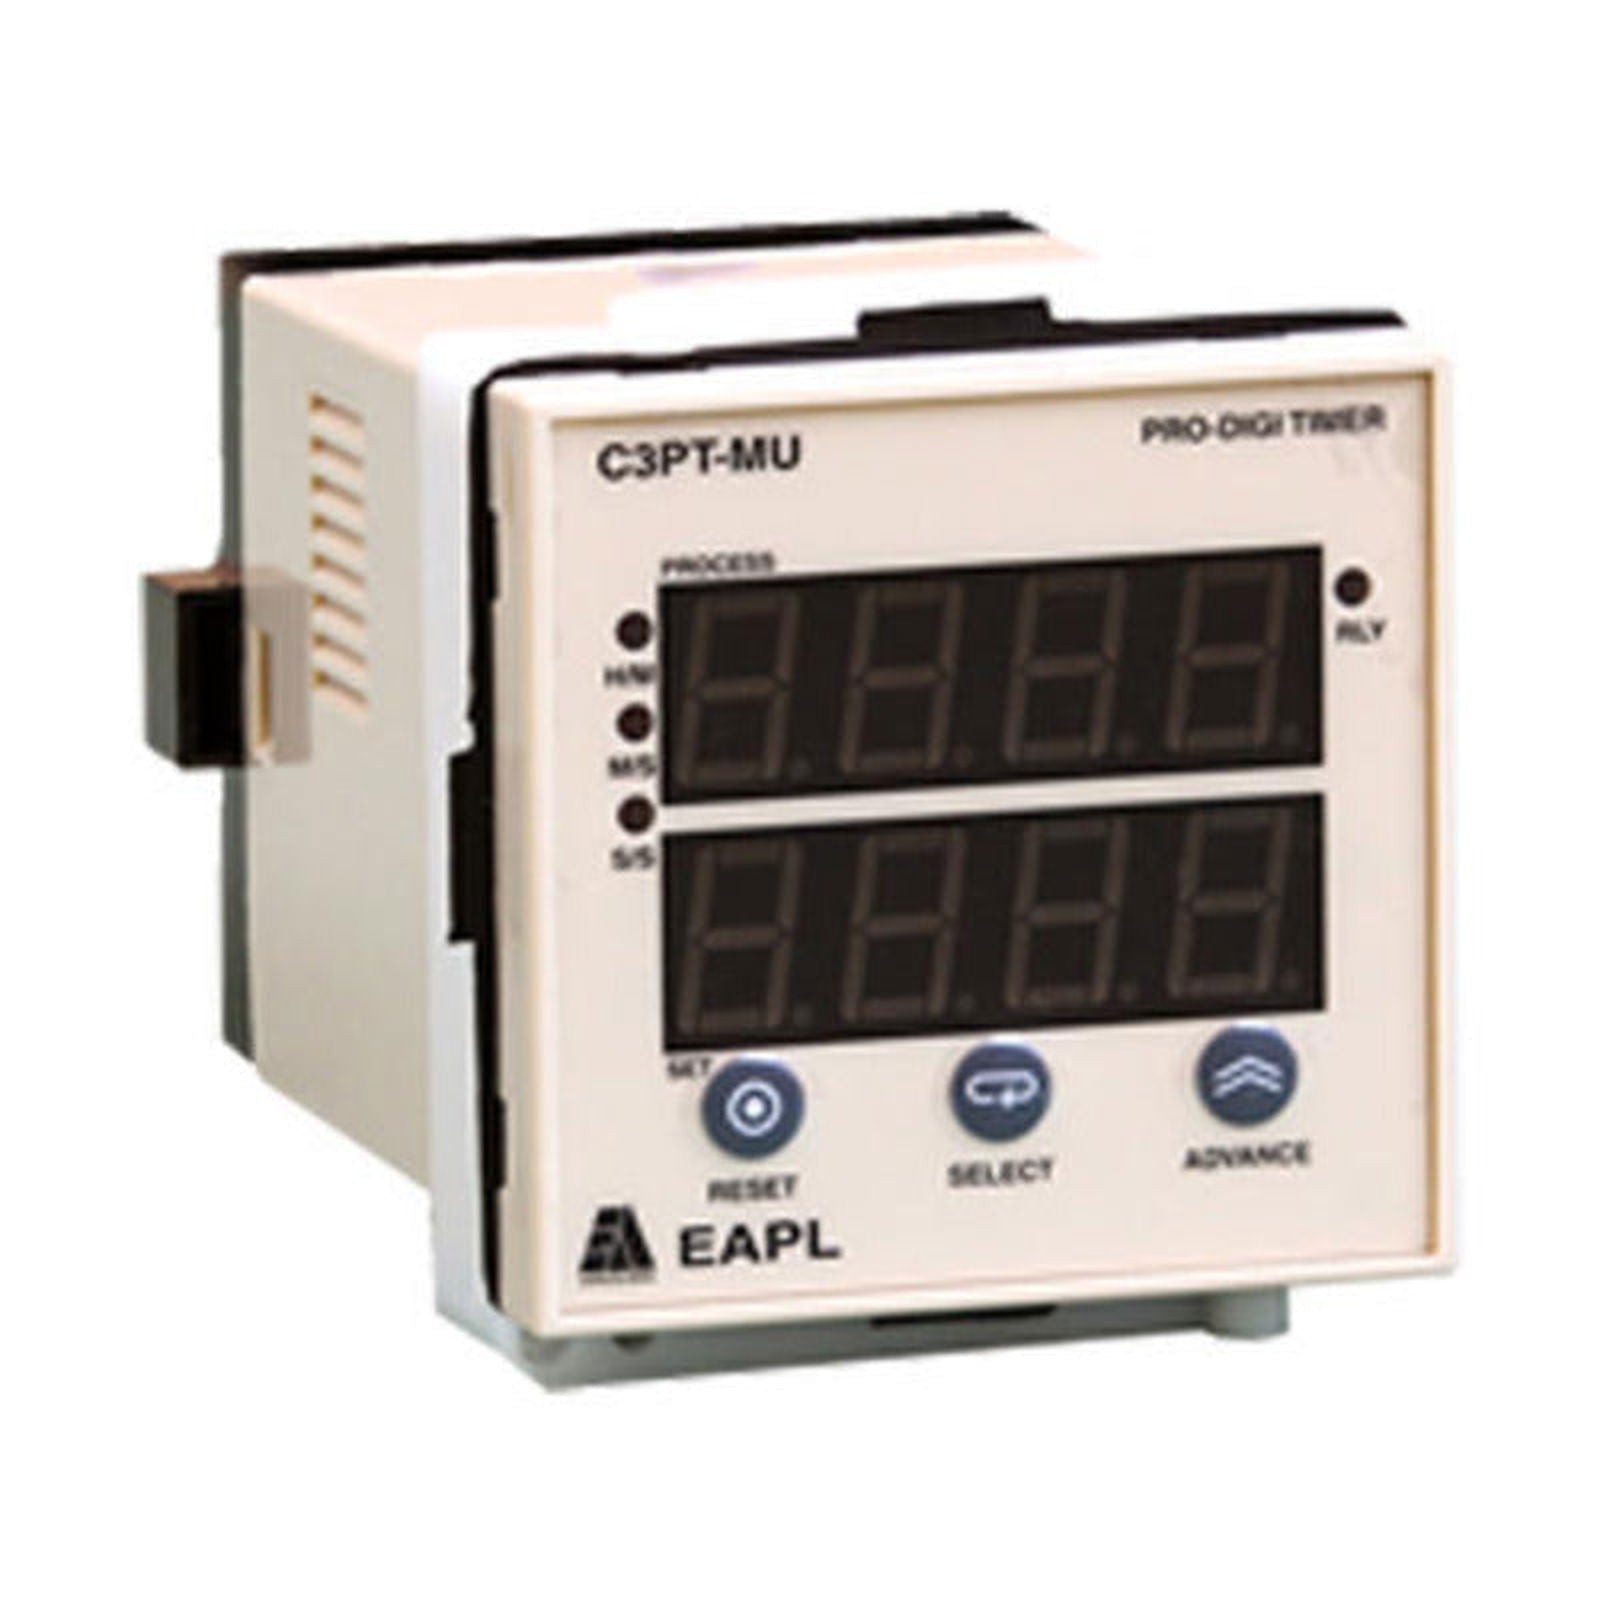 EAPL C3PT-MU Digital Timer 72*72 - voltkart - EAPL - 